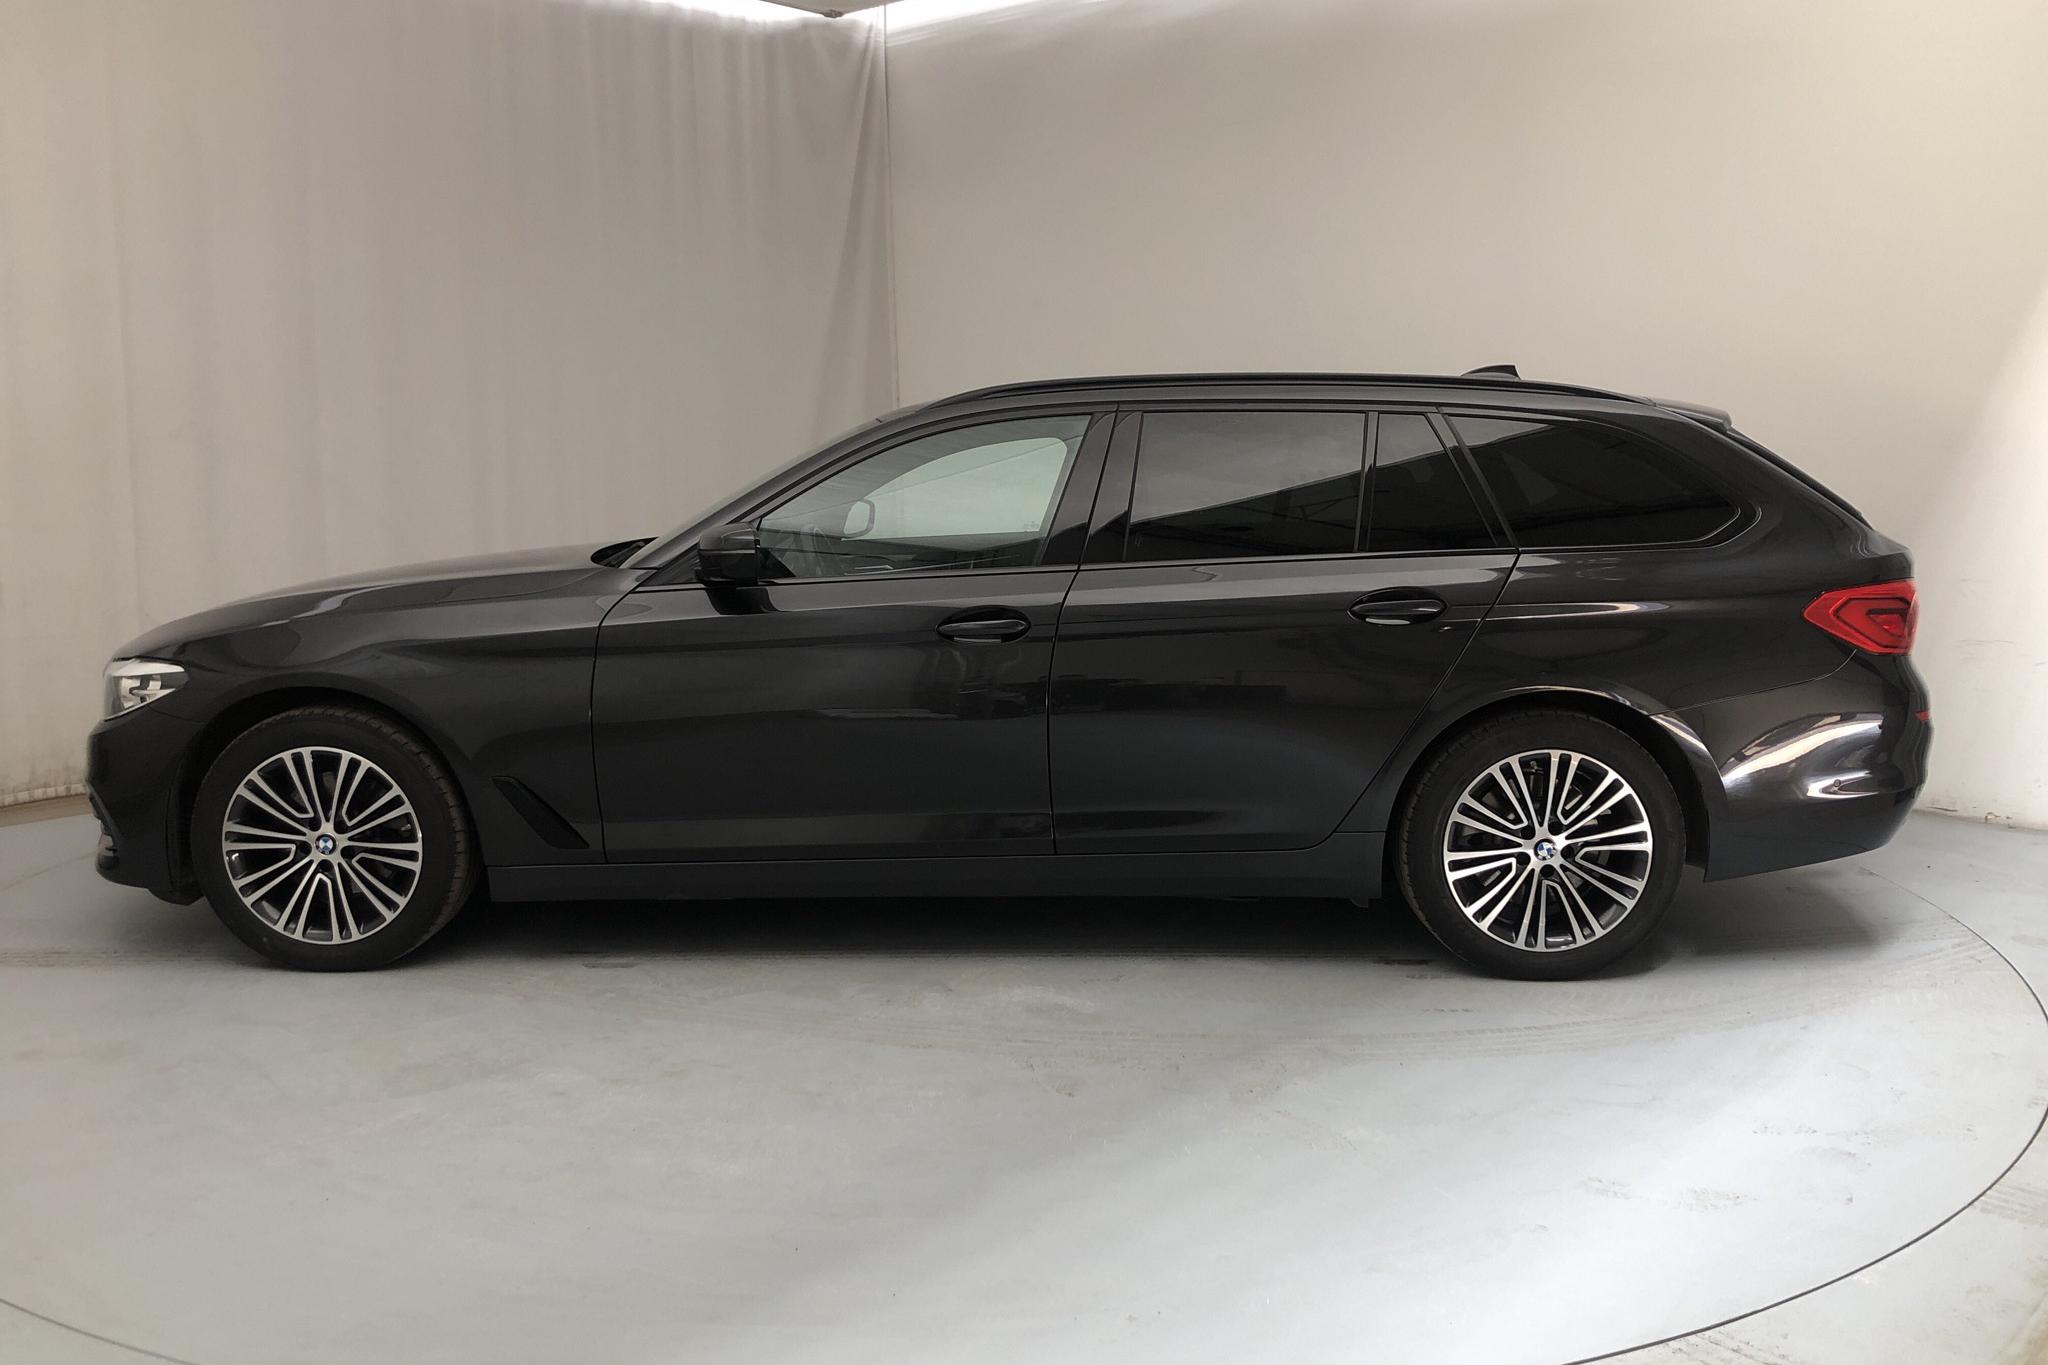 BMW 520d xDrive Touring, G31 (190hk) - 27 870 km - Automatic - gray - 2019